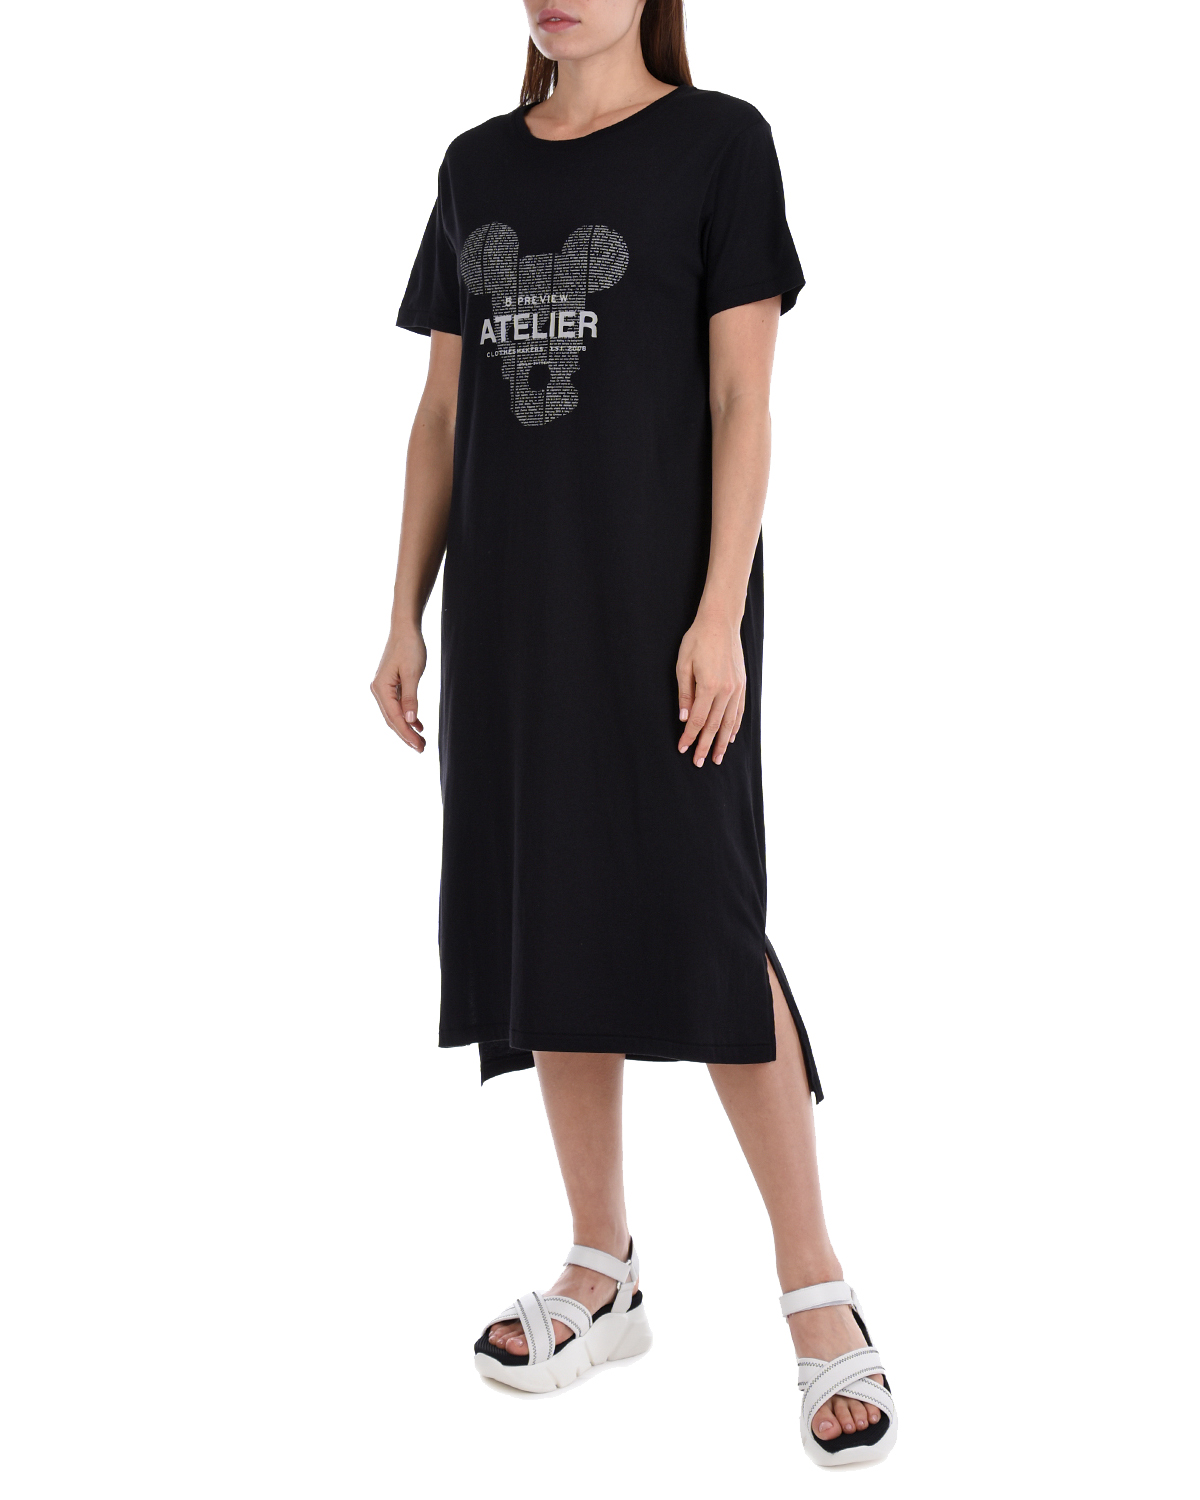 Платье-футболка с принтом "Atelier" 5 Preview, размер 40, цвет черный - фото 2